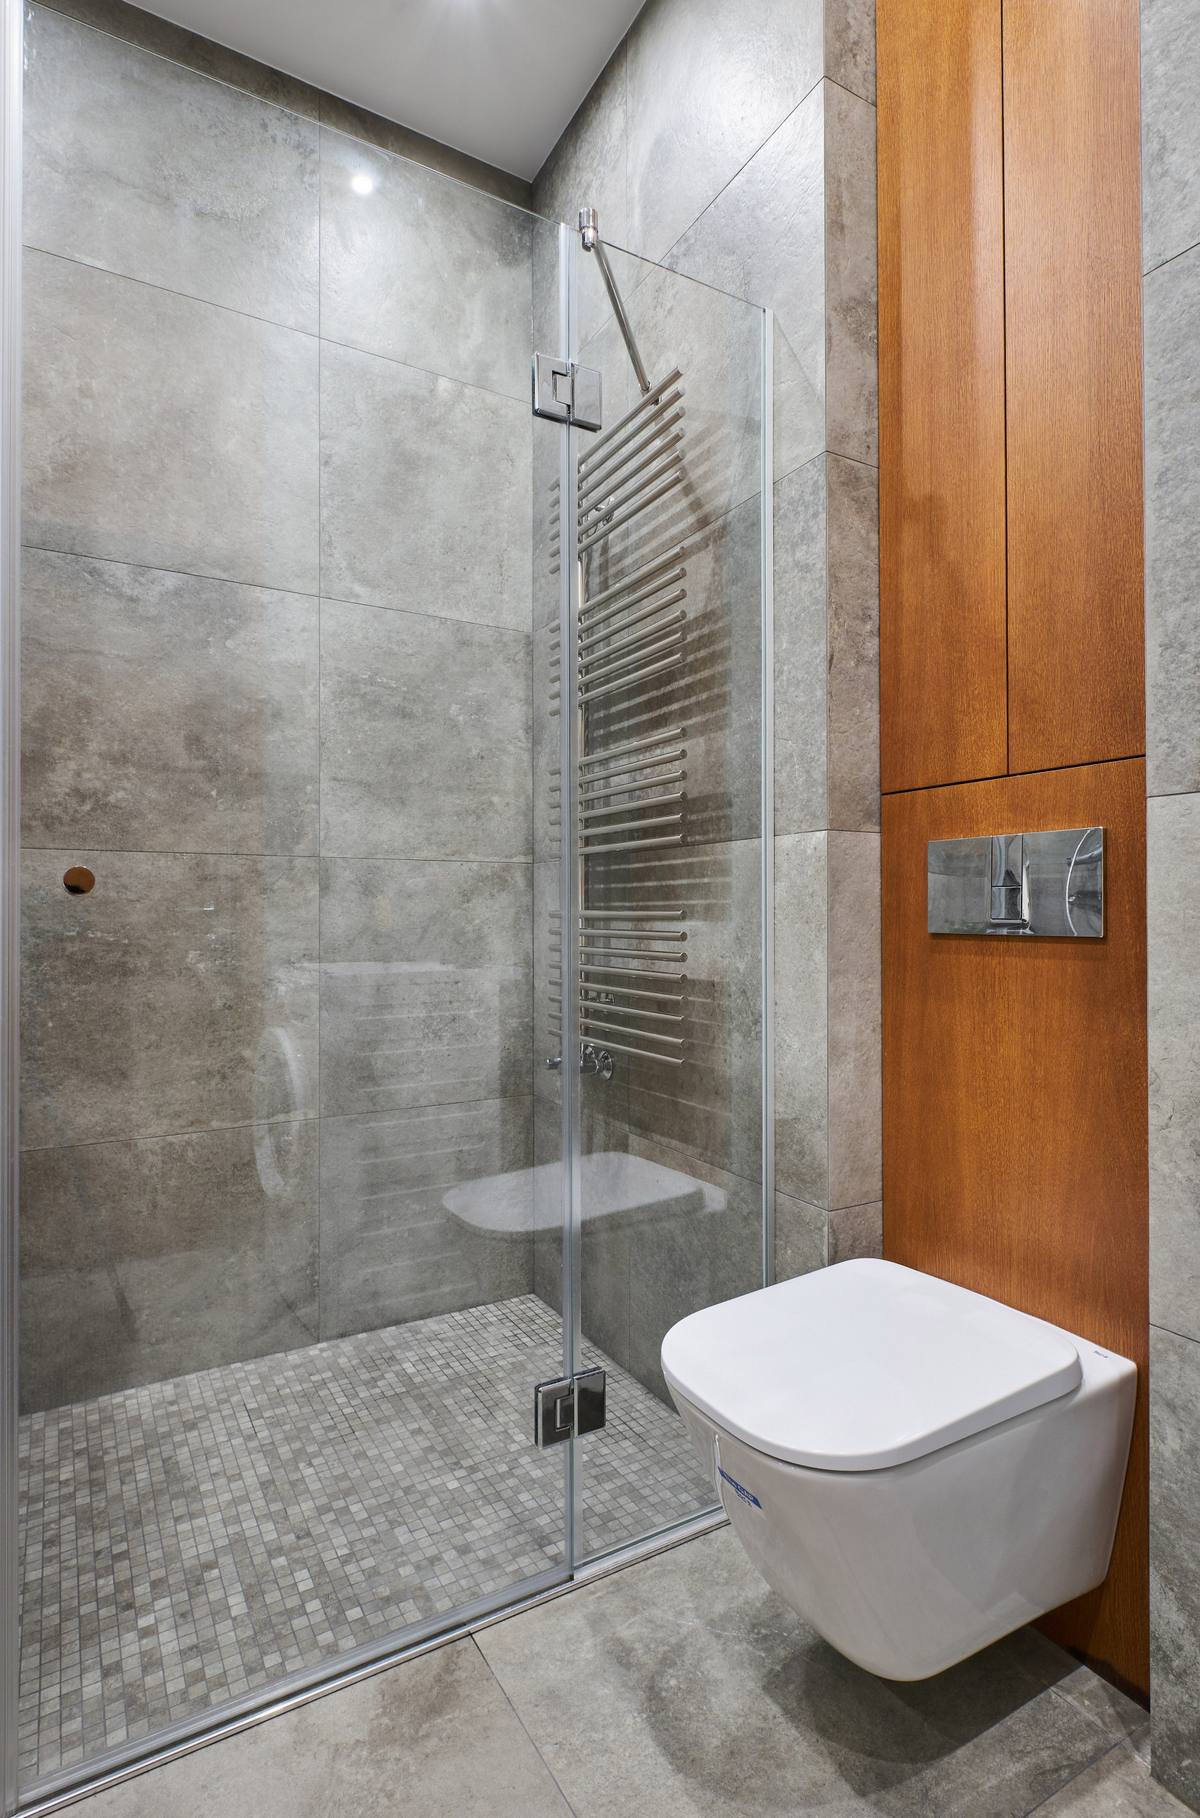 Bồn toilet gắn tường để giải phóng diện tích mặt sàn. Buồng tắm lát gạch sàn ô vuông mini tạo sự phân vùng đồng thời ngăn cách bởi cửa kính trong suốt nên vẫn đảm bảo tính thoáng đãng cho căn phòng.